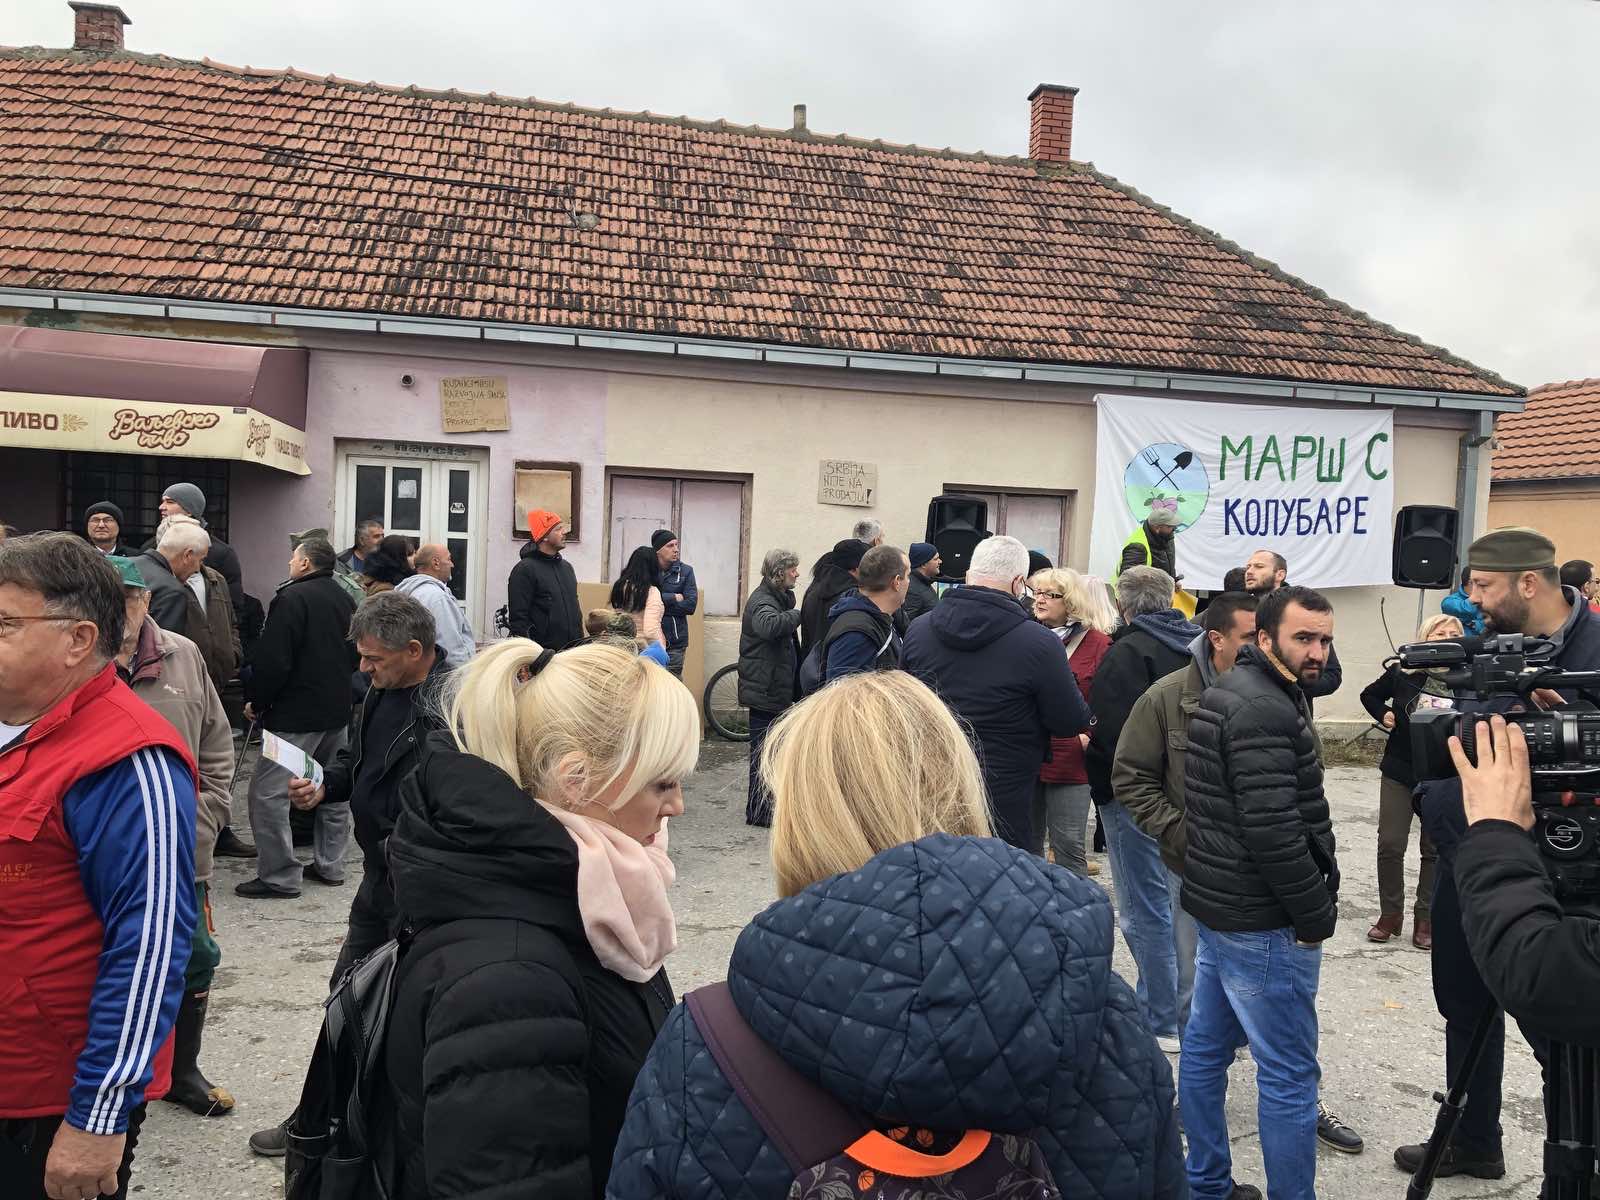 Ekoloski protest selo Lukavac kod Valjeva